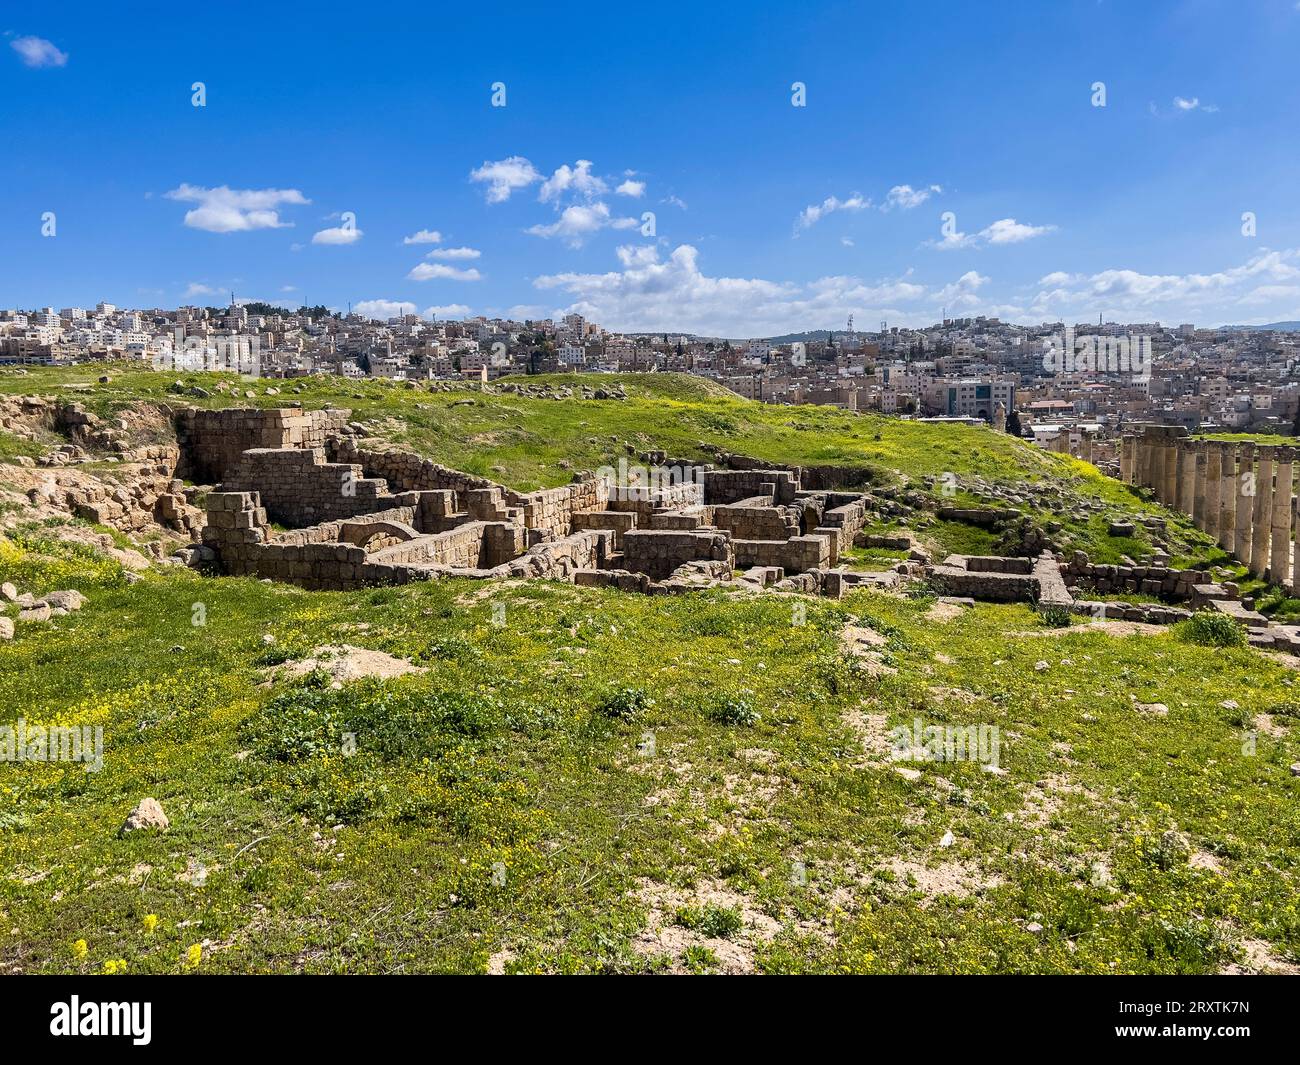 L'antica città di Jerash, che si crede sia stata fondata nel 331 a.C. da Alessandro Magno, Jerash, Giordania, Medio Oriente Foto Stock